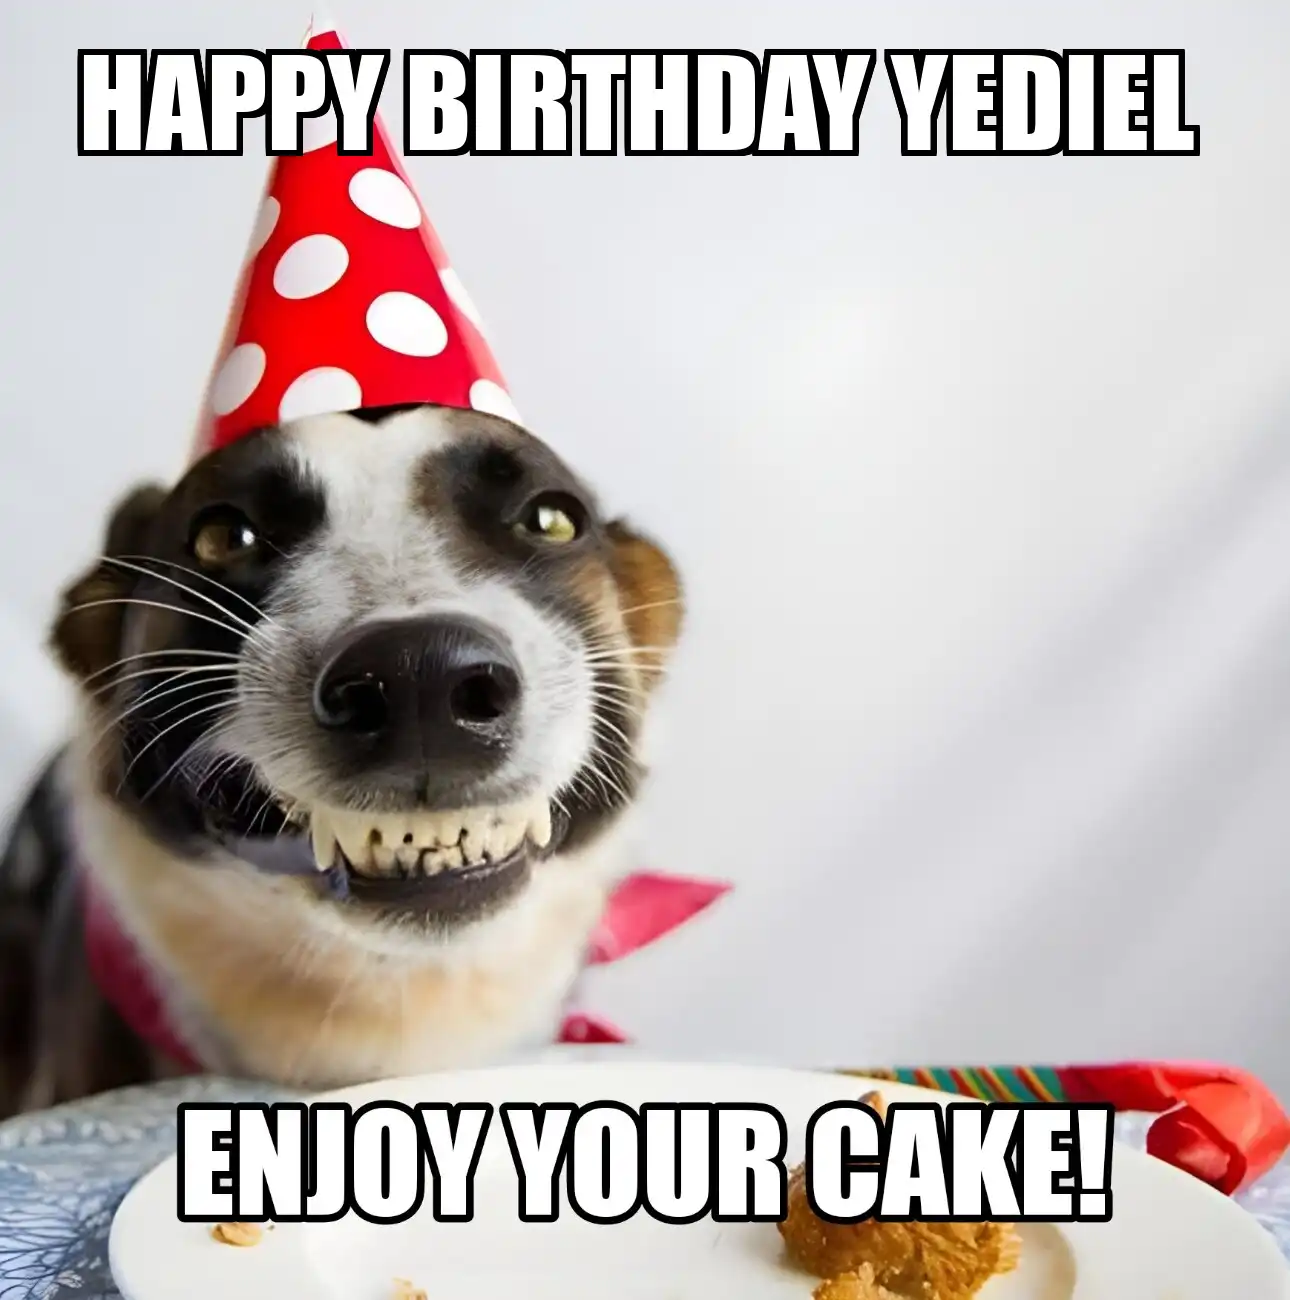 Happy Birthday Yediel Enjoy Your Cake Dog Meme